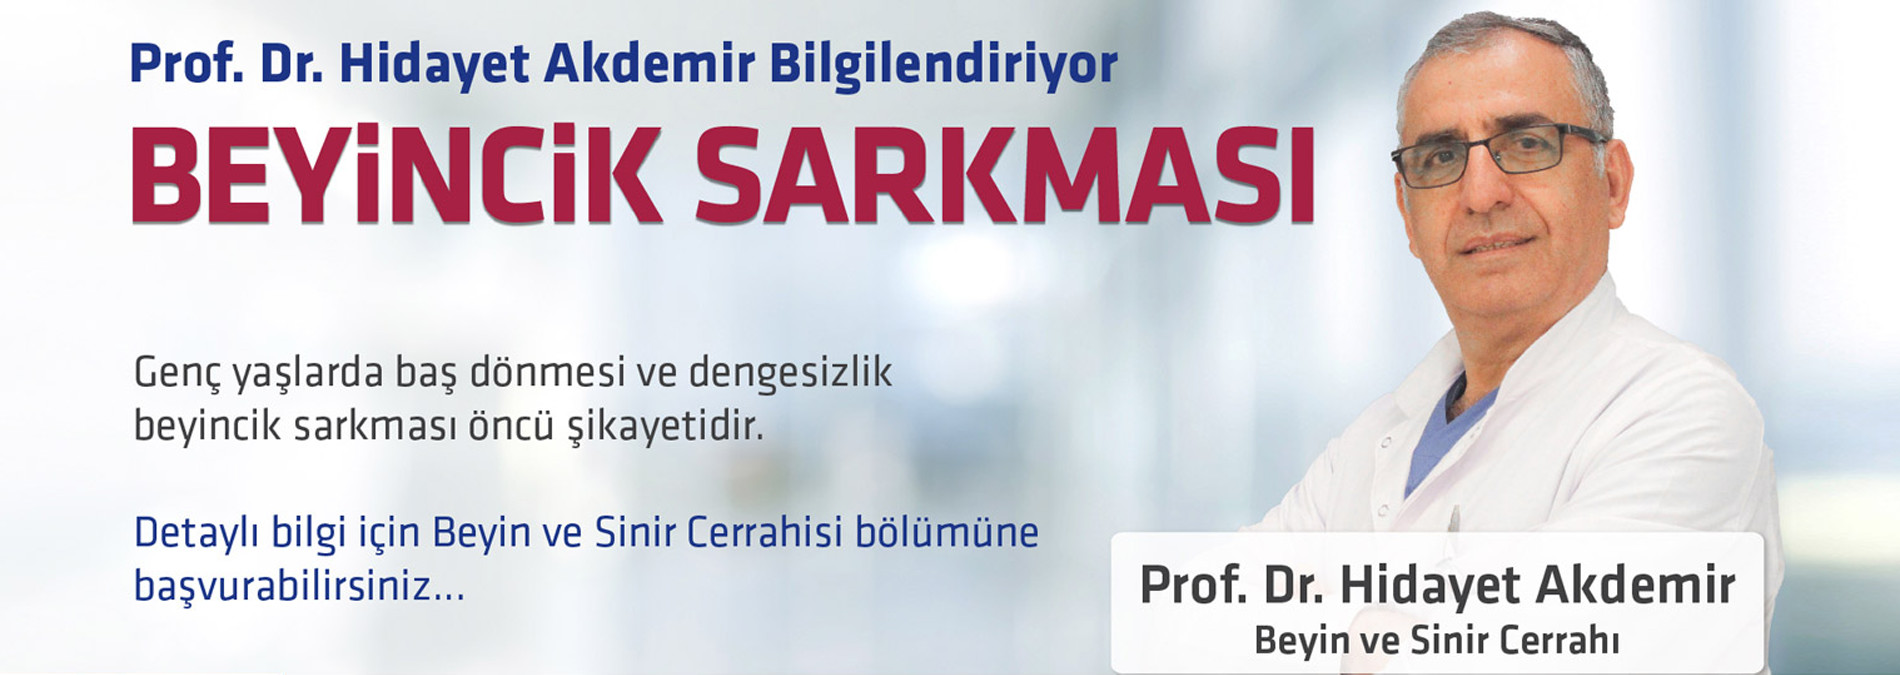 Prof.Dr.Hidayet Akdemir Beyincik Sarkması